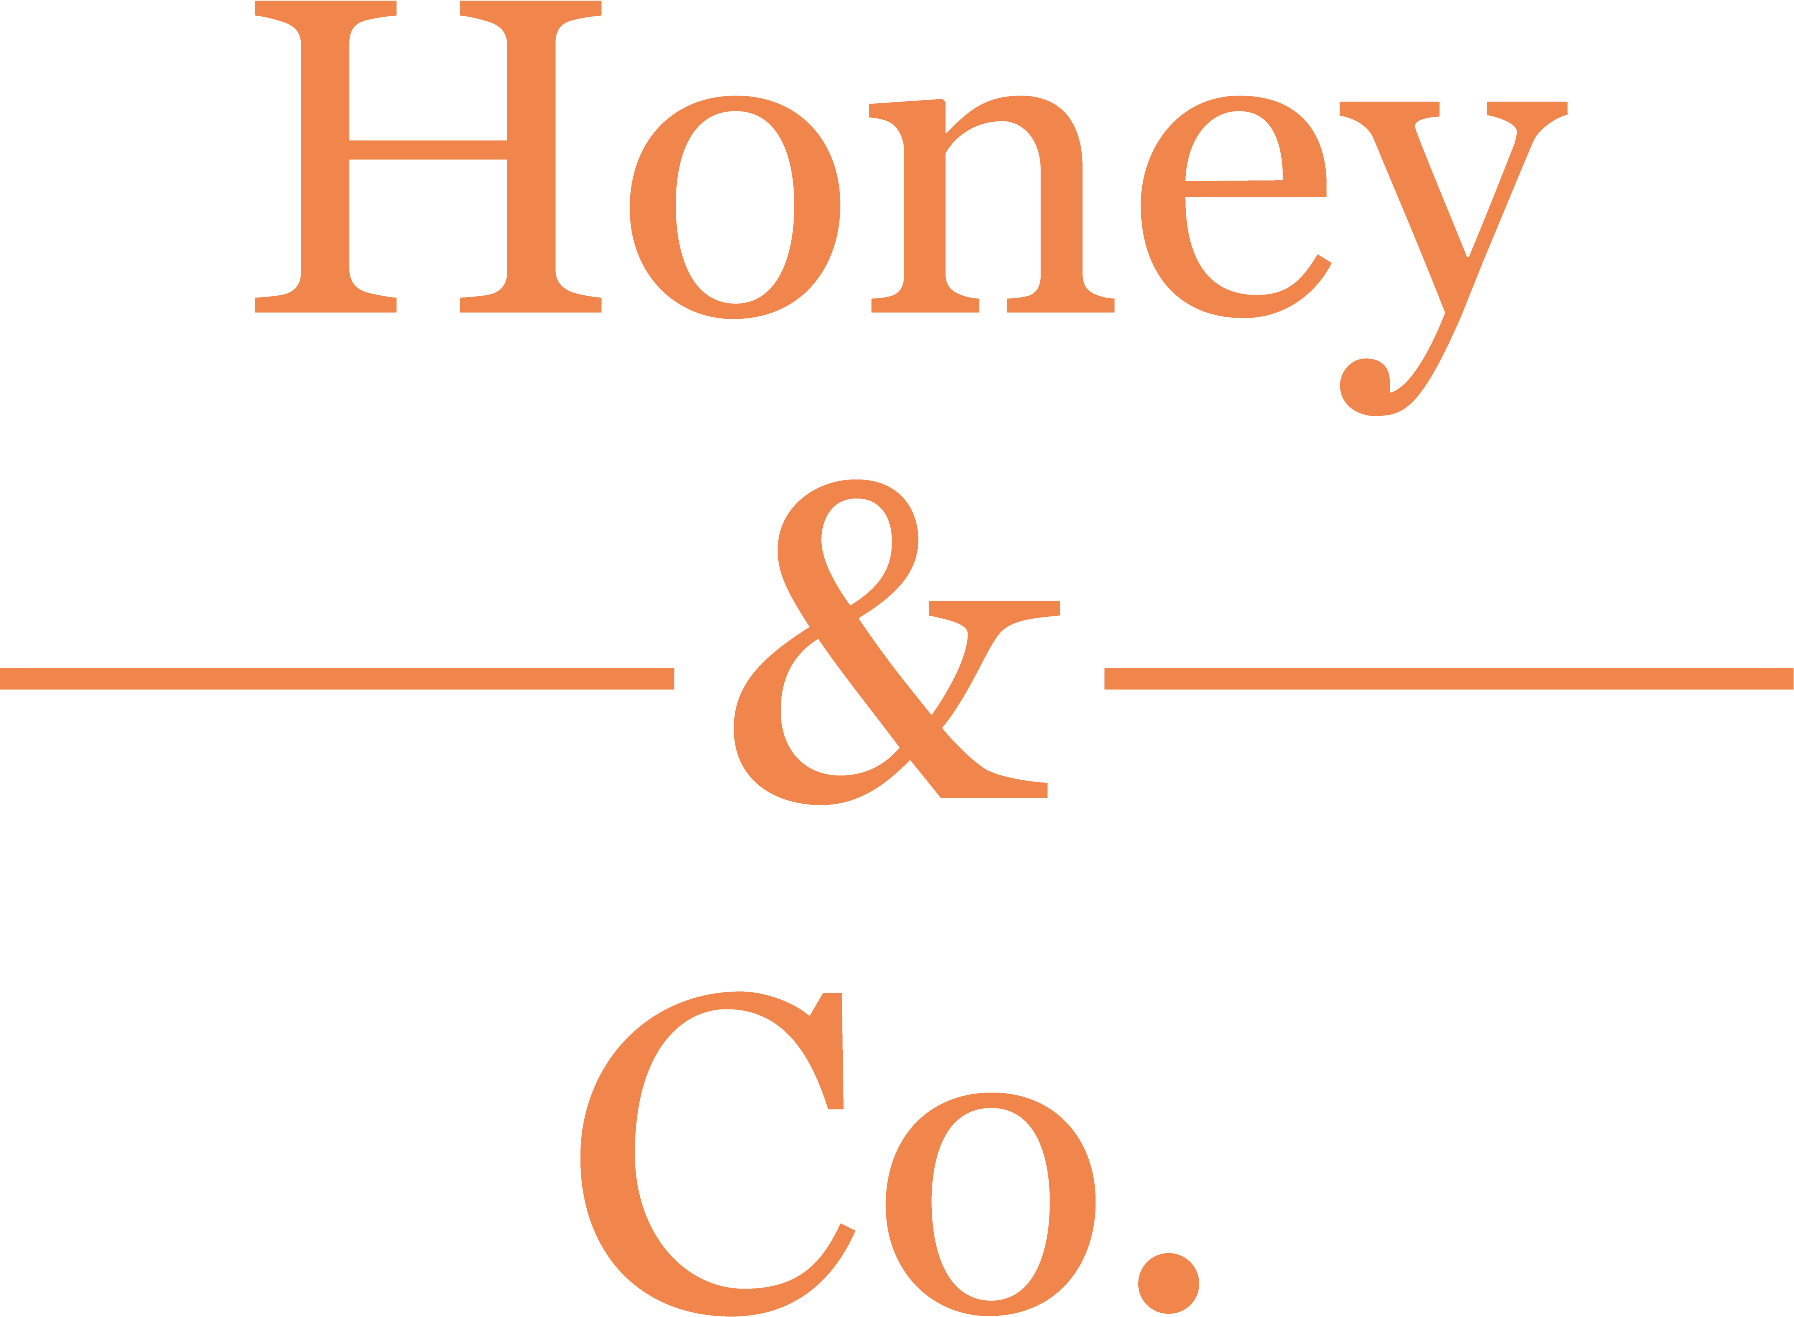 Honey & Co